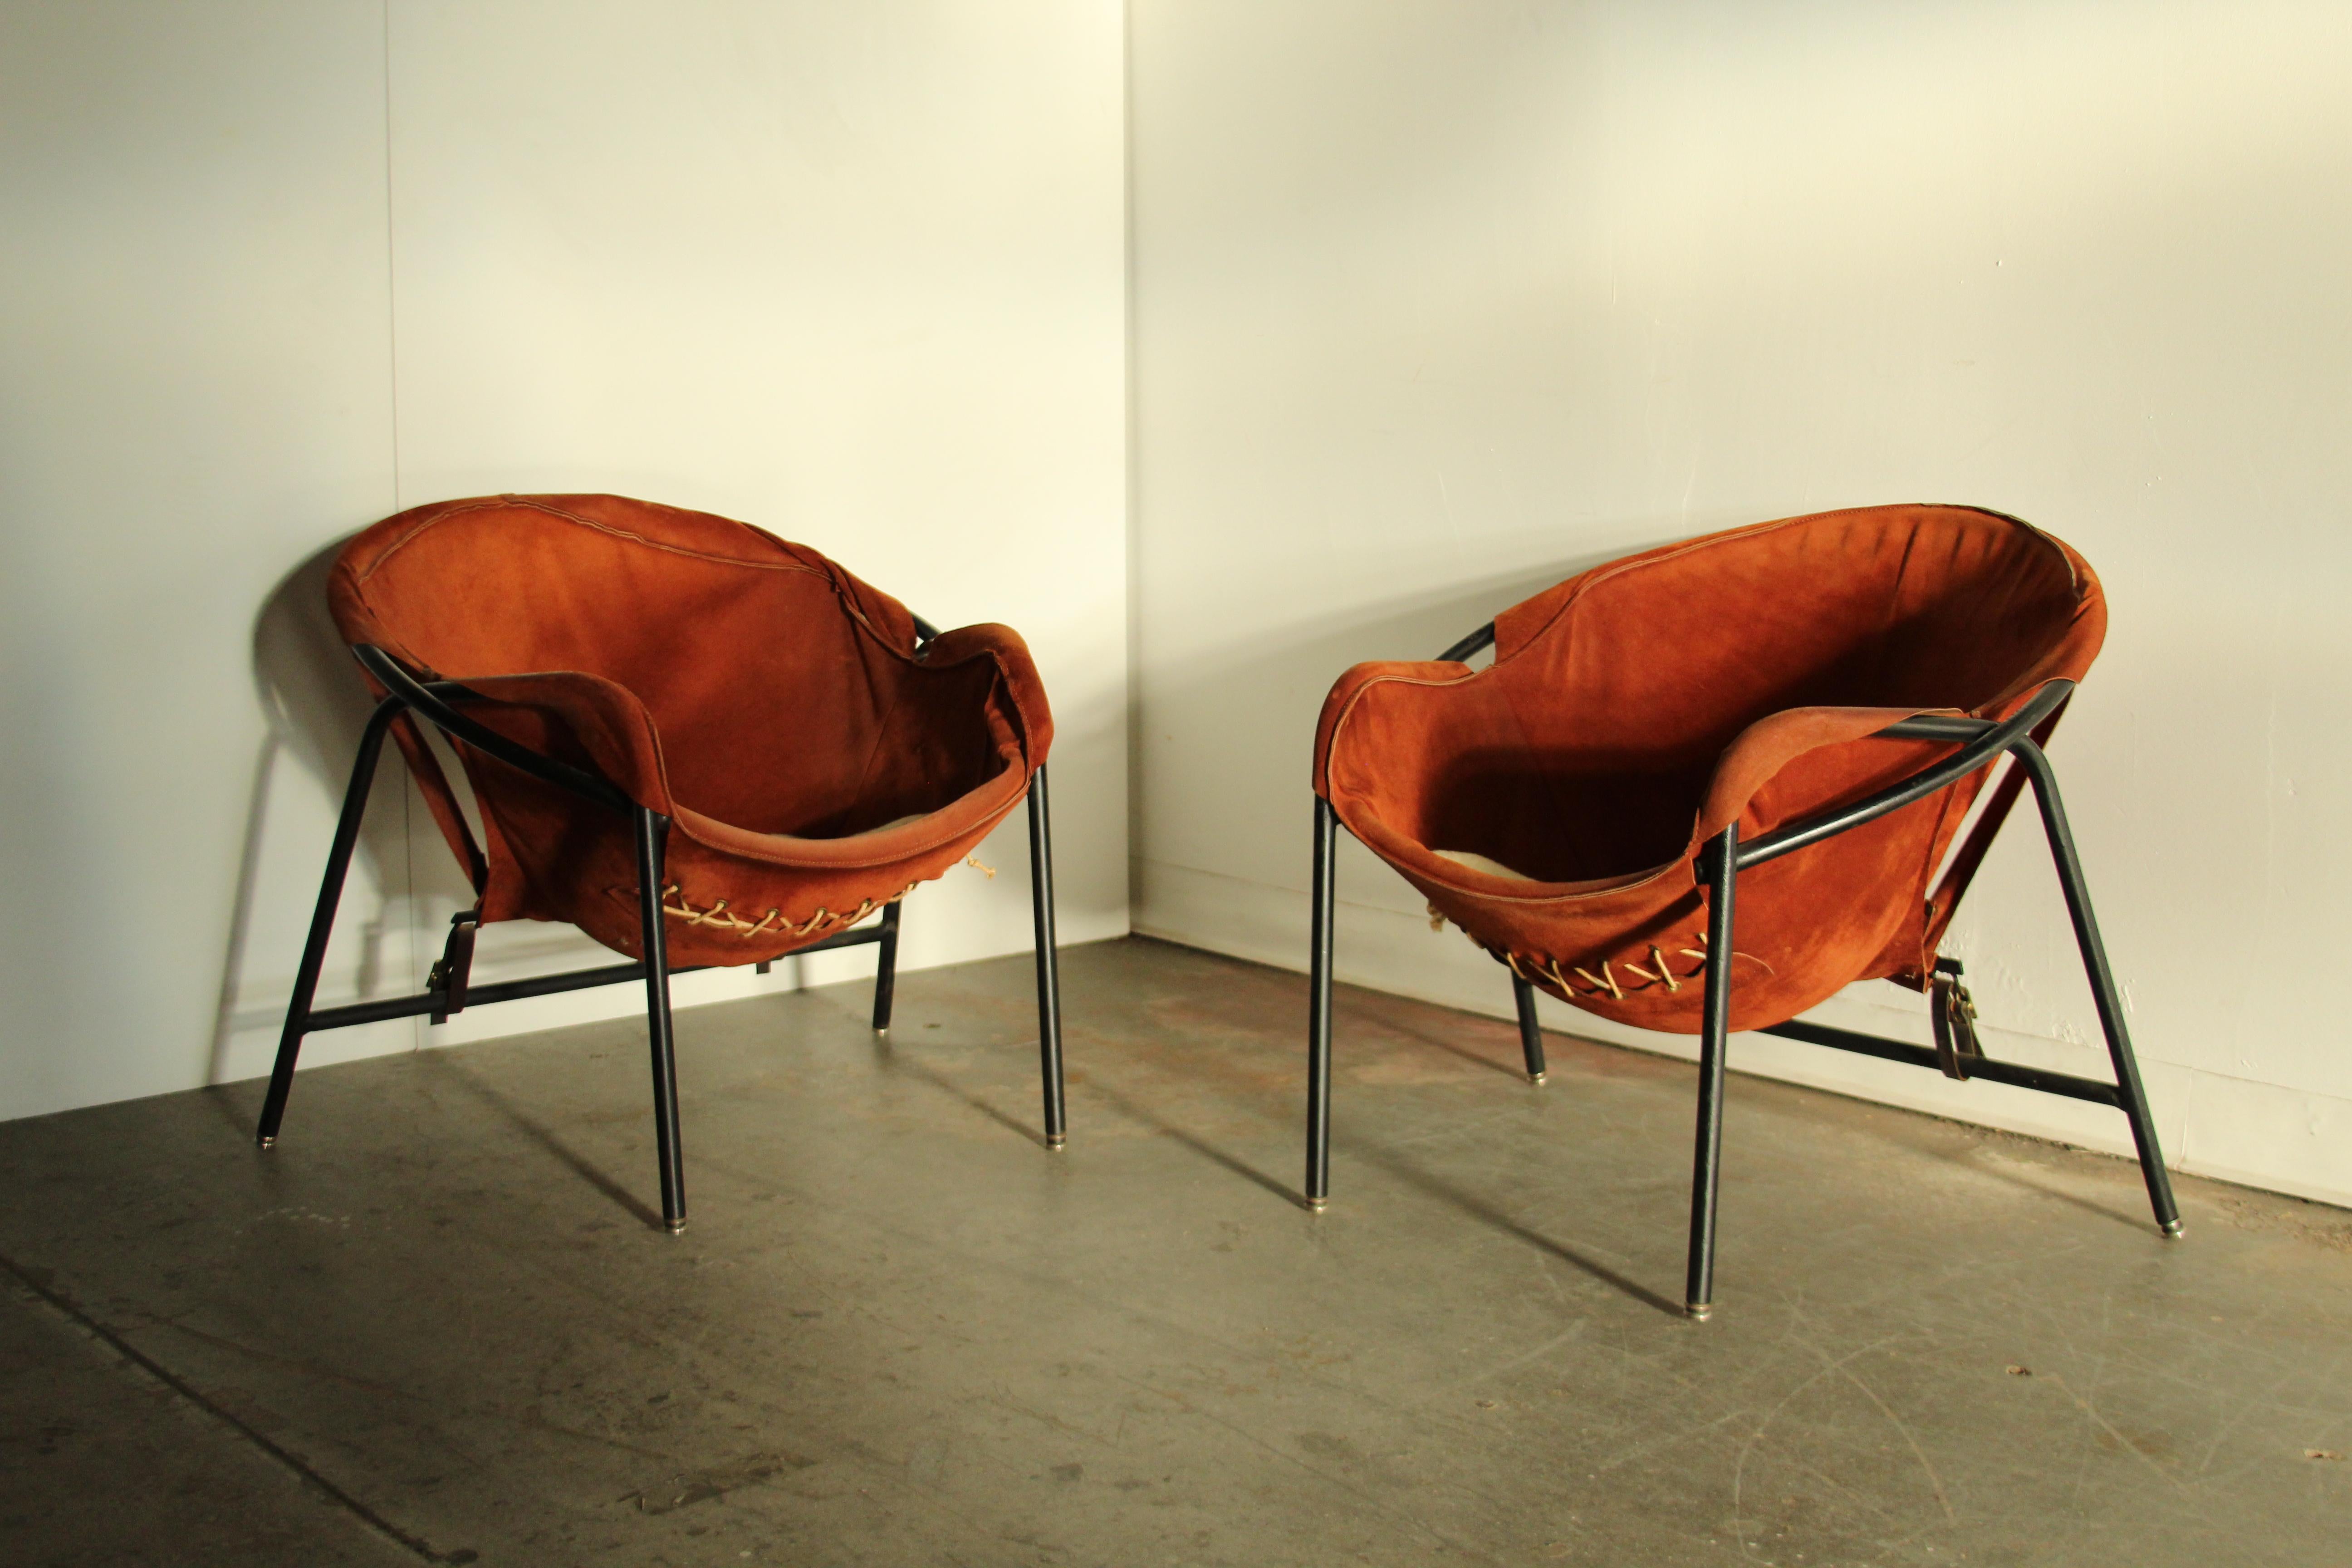 Une fabuleuse paire de chaises faciles conçues par Erik Ole Jørgensen et produites par Bovirke dans les années 1950. Sièges en daim d'origine avec détails de corde visibles sur le dessous. Cadre en acier noirci avec pieds autonivelants. Charmantes